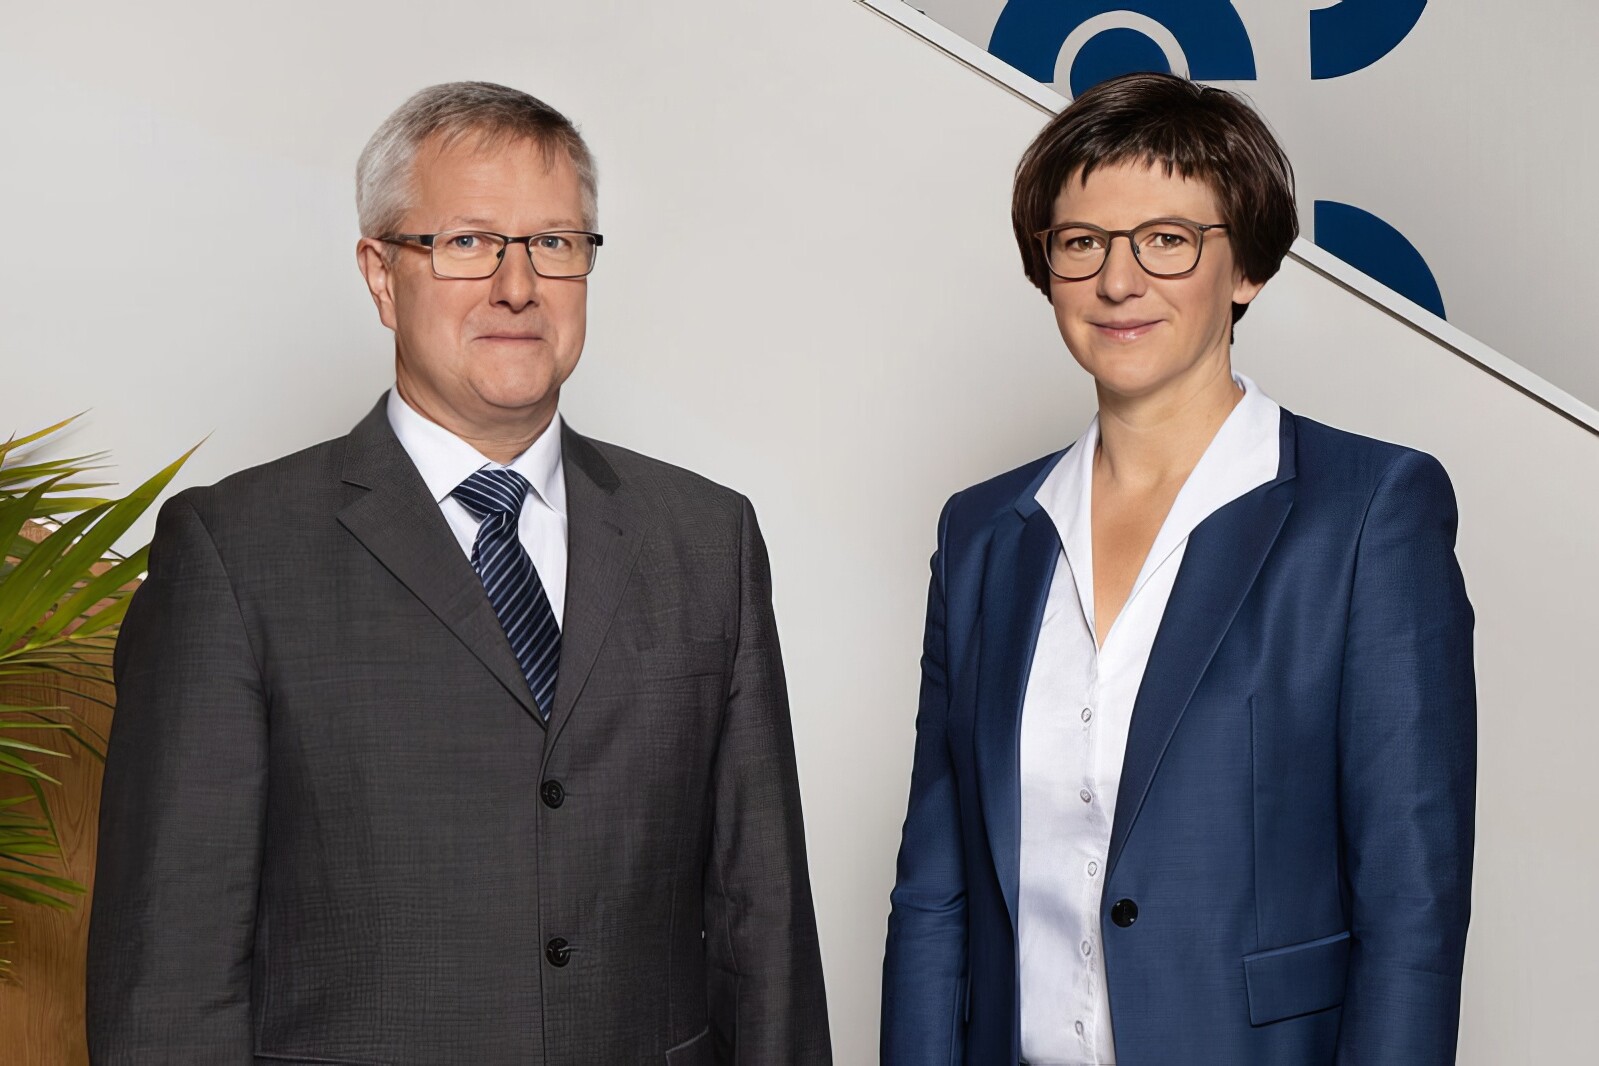 Herr Schumacher und Frau Göltzer (Hauptgeschäftsführung) stehen vor einer weißen Wand